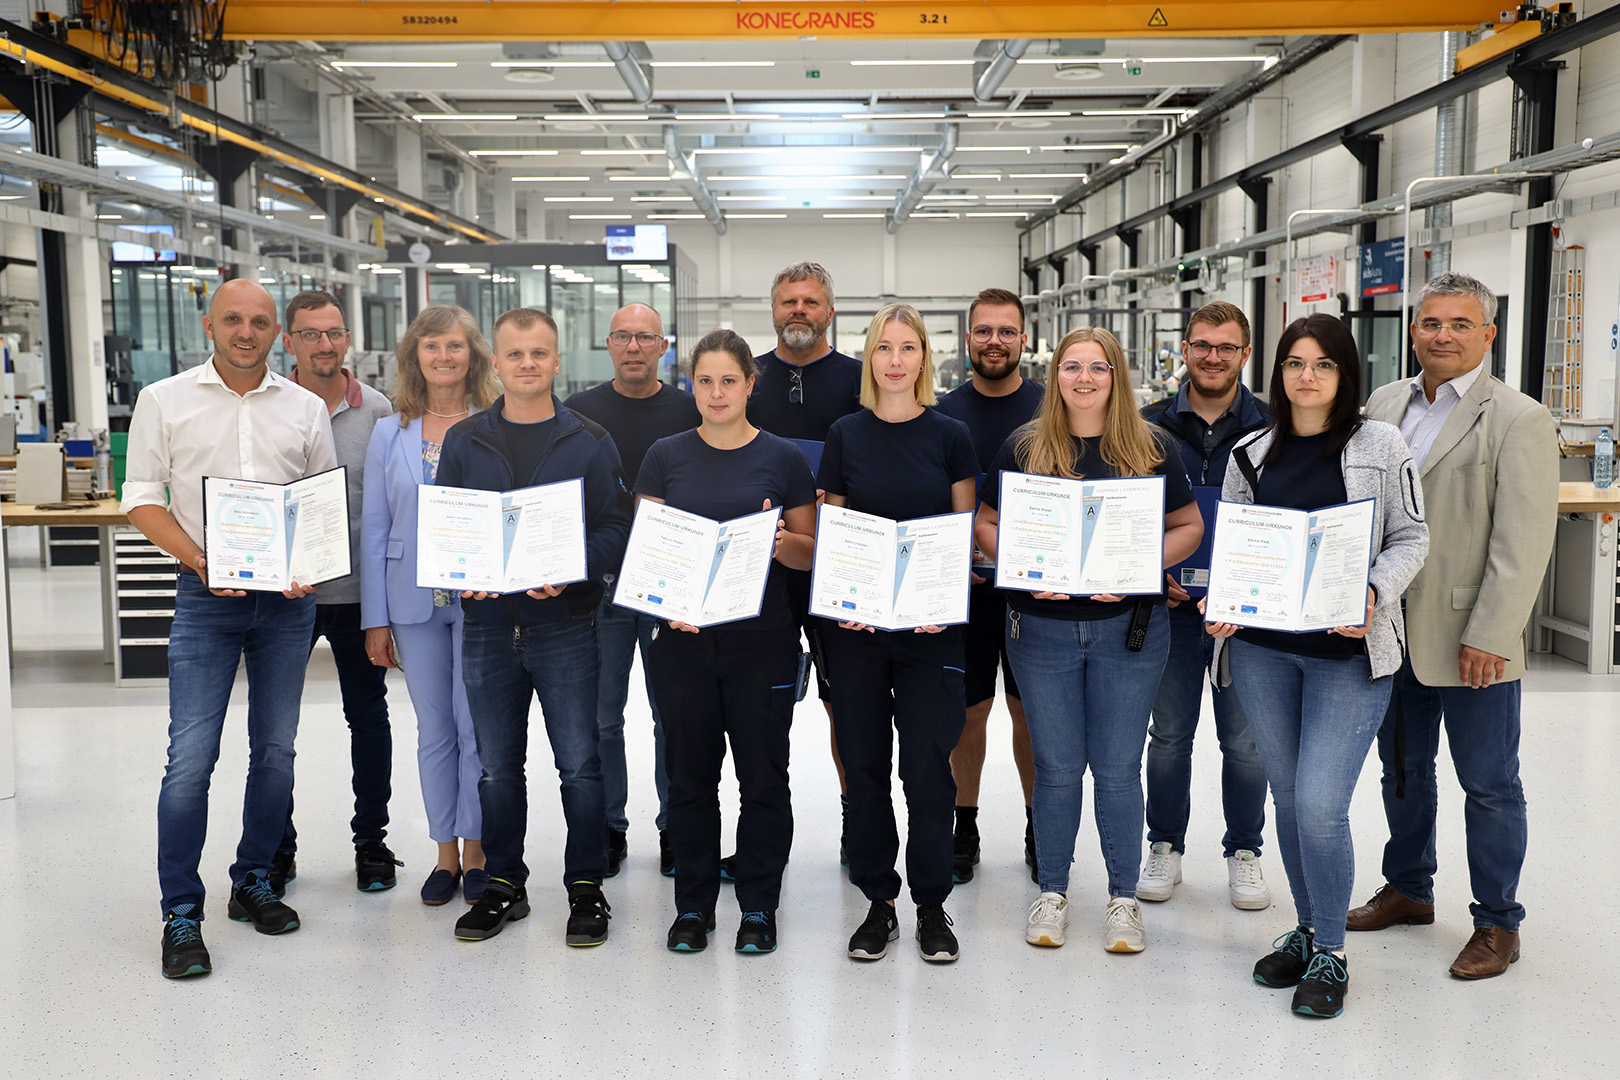 Gruppenfoto zur ISO 17024 Zertifizierung im sterner training center mit dem Zertifikat